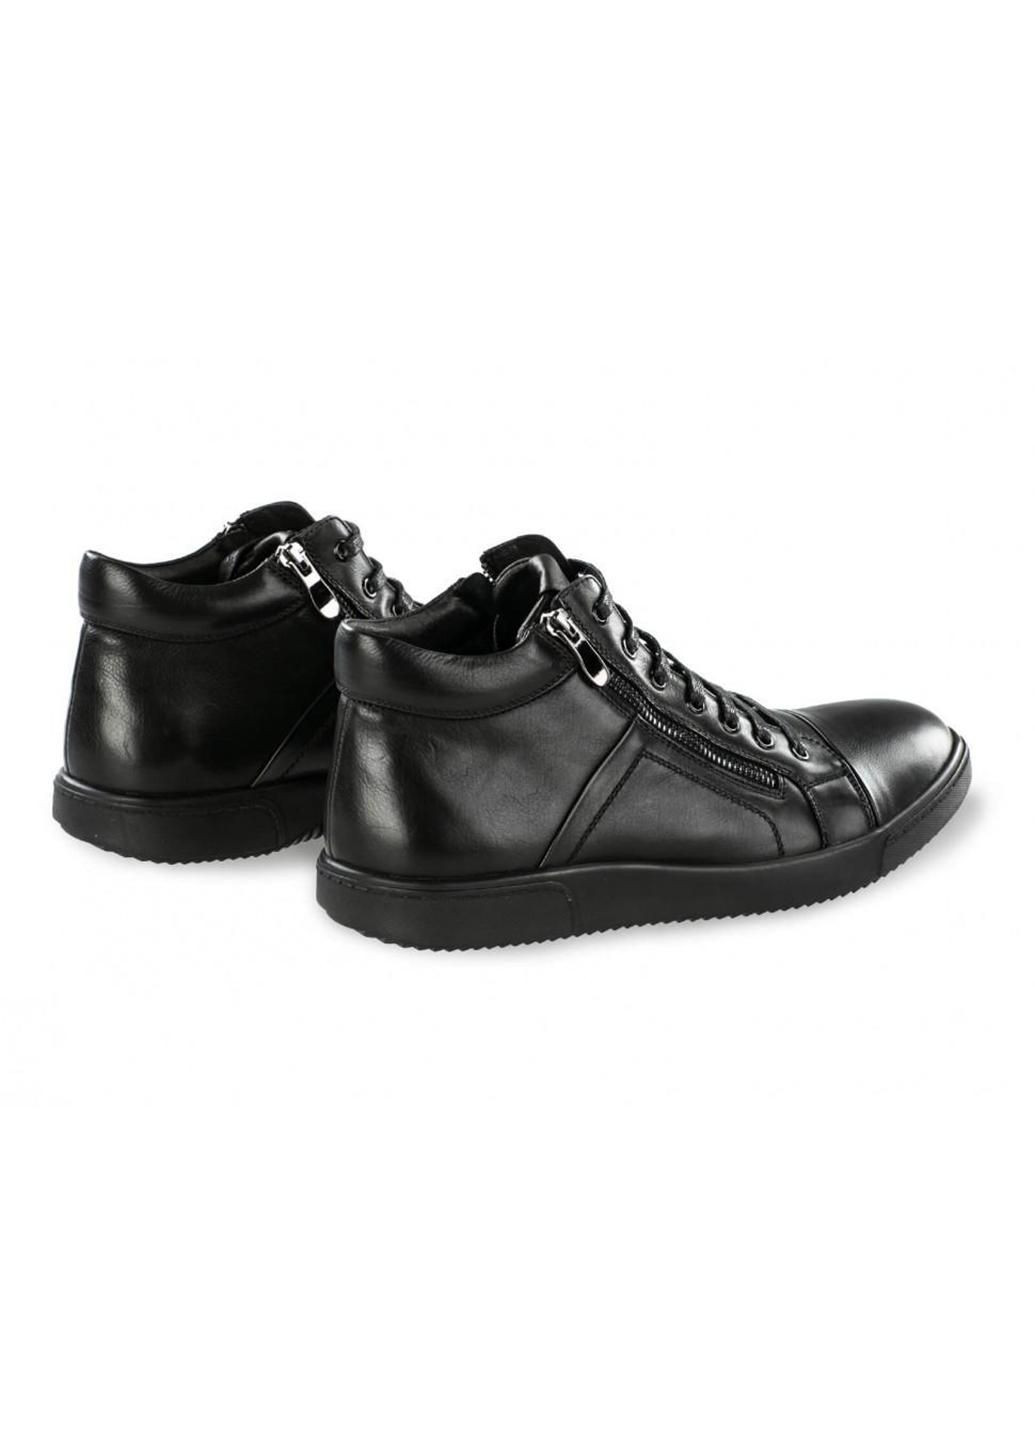 Черные зимние ботинки 7184309-б цвет черный Clemento